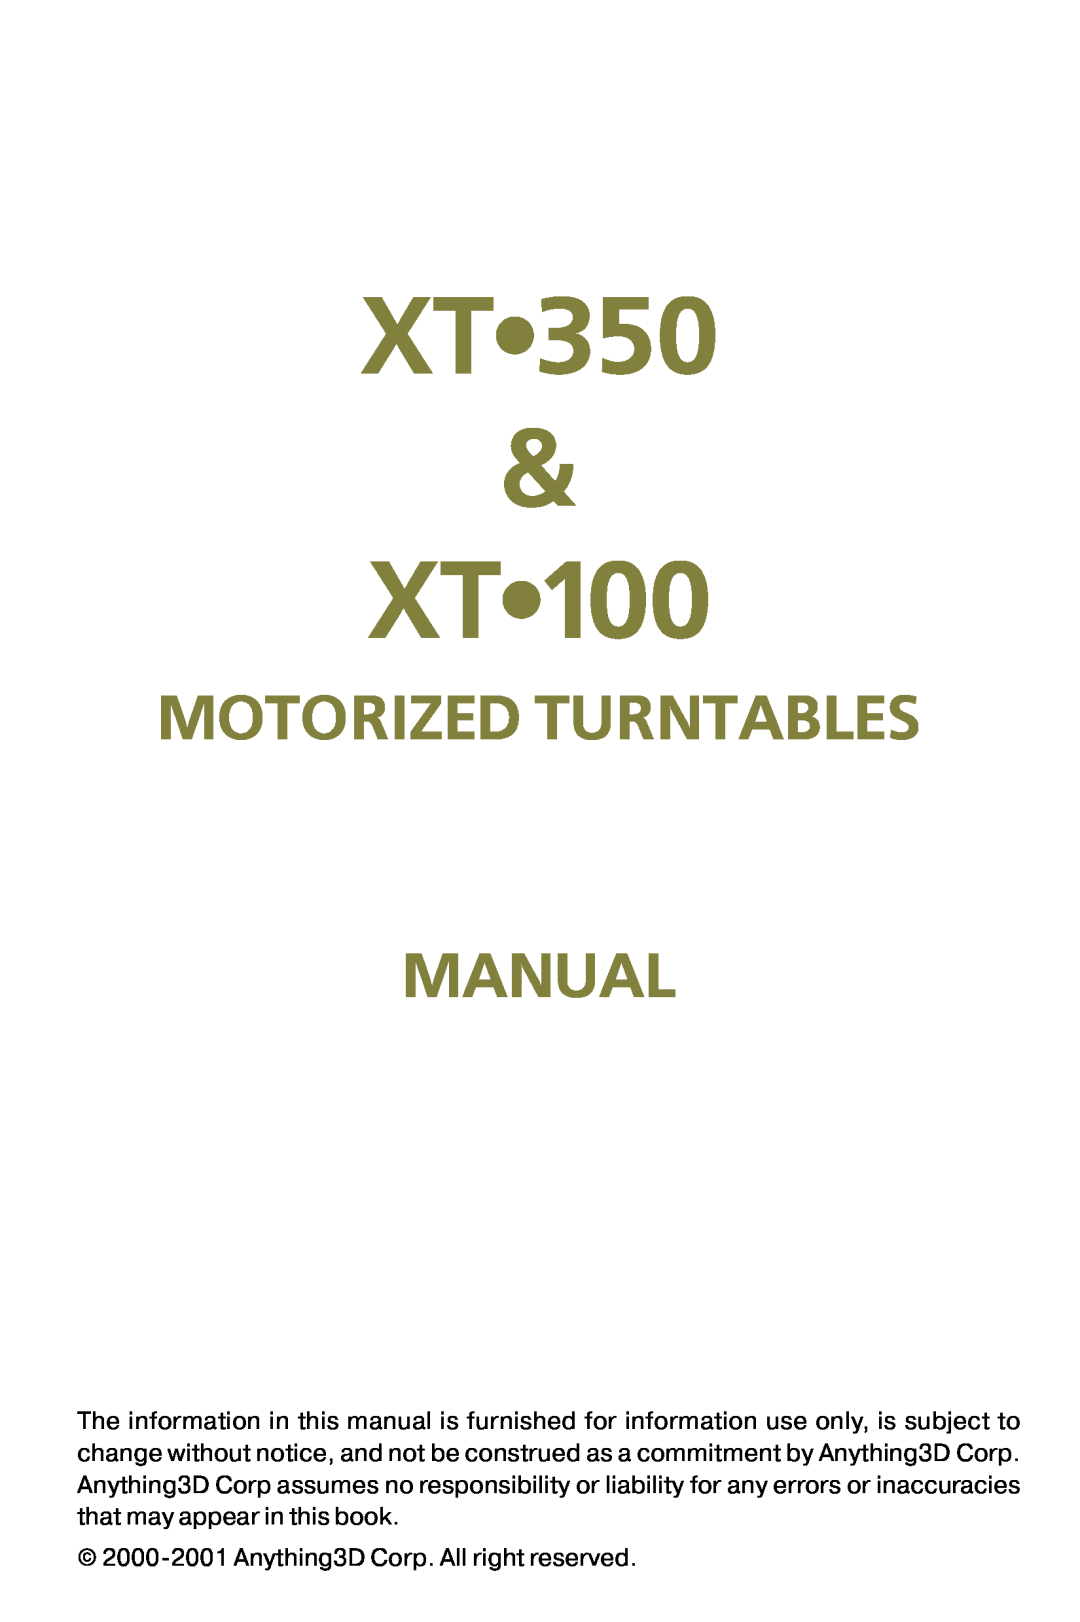 Nikon XT100, XT350 manual XT 350 & XT, Motorized Turntables Manual 